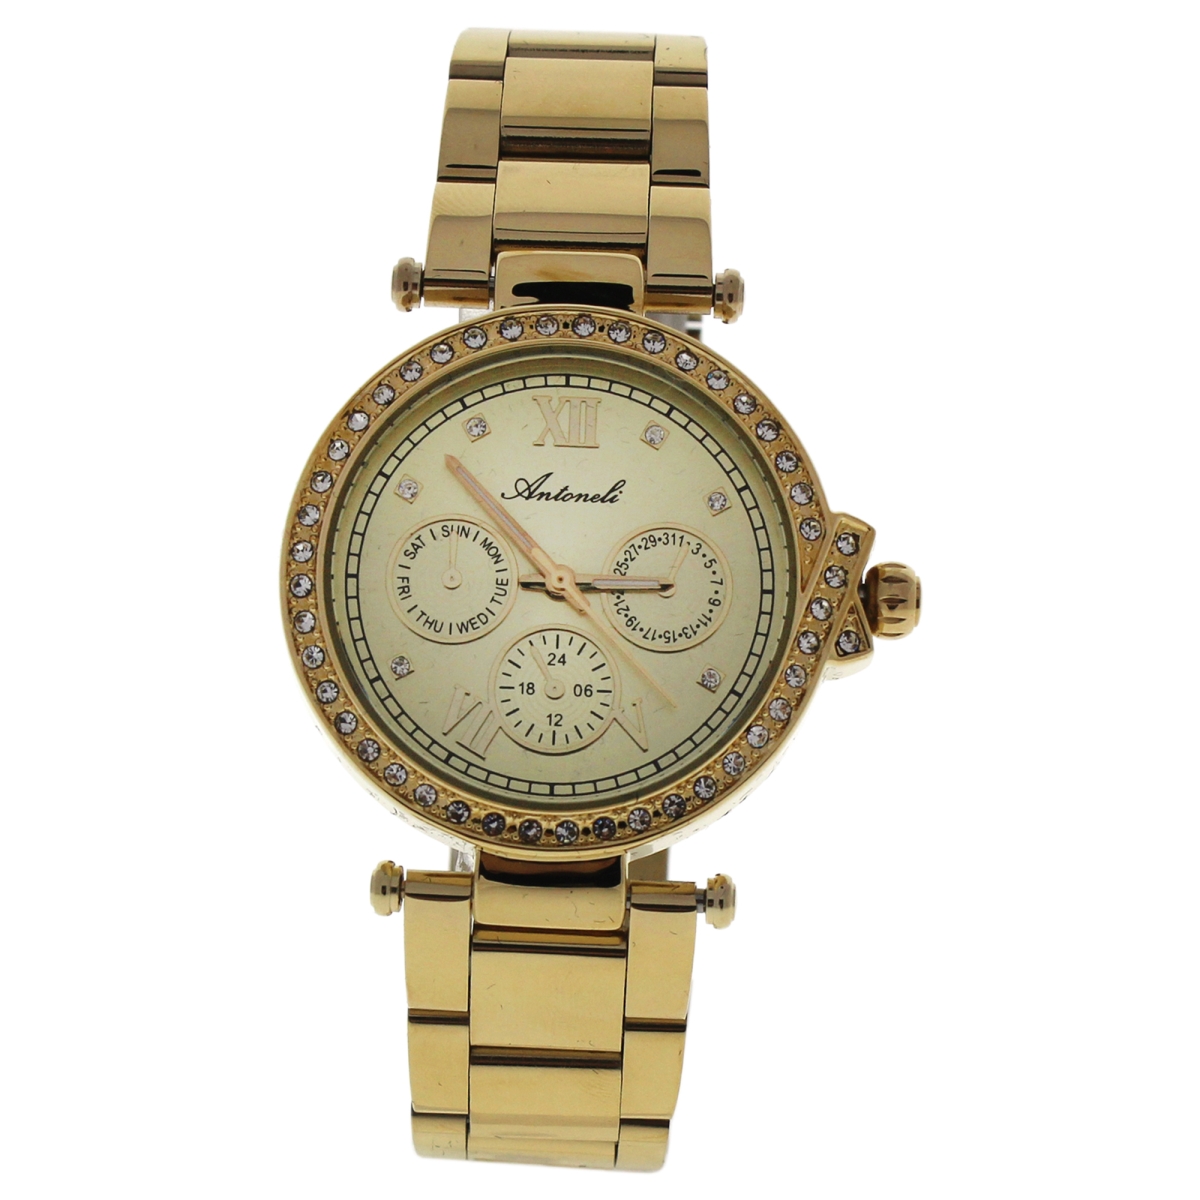 W-wat-1475 Gold Stainless Steel Bracelet Watch For Women, Al0519-01